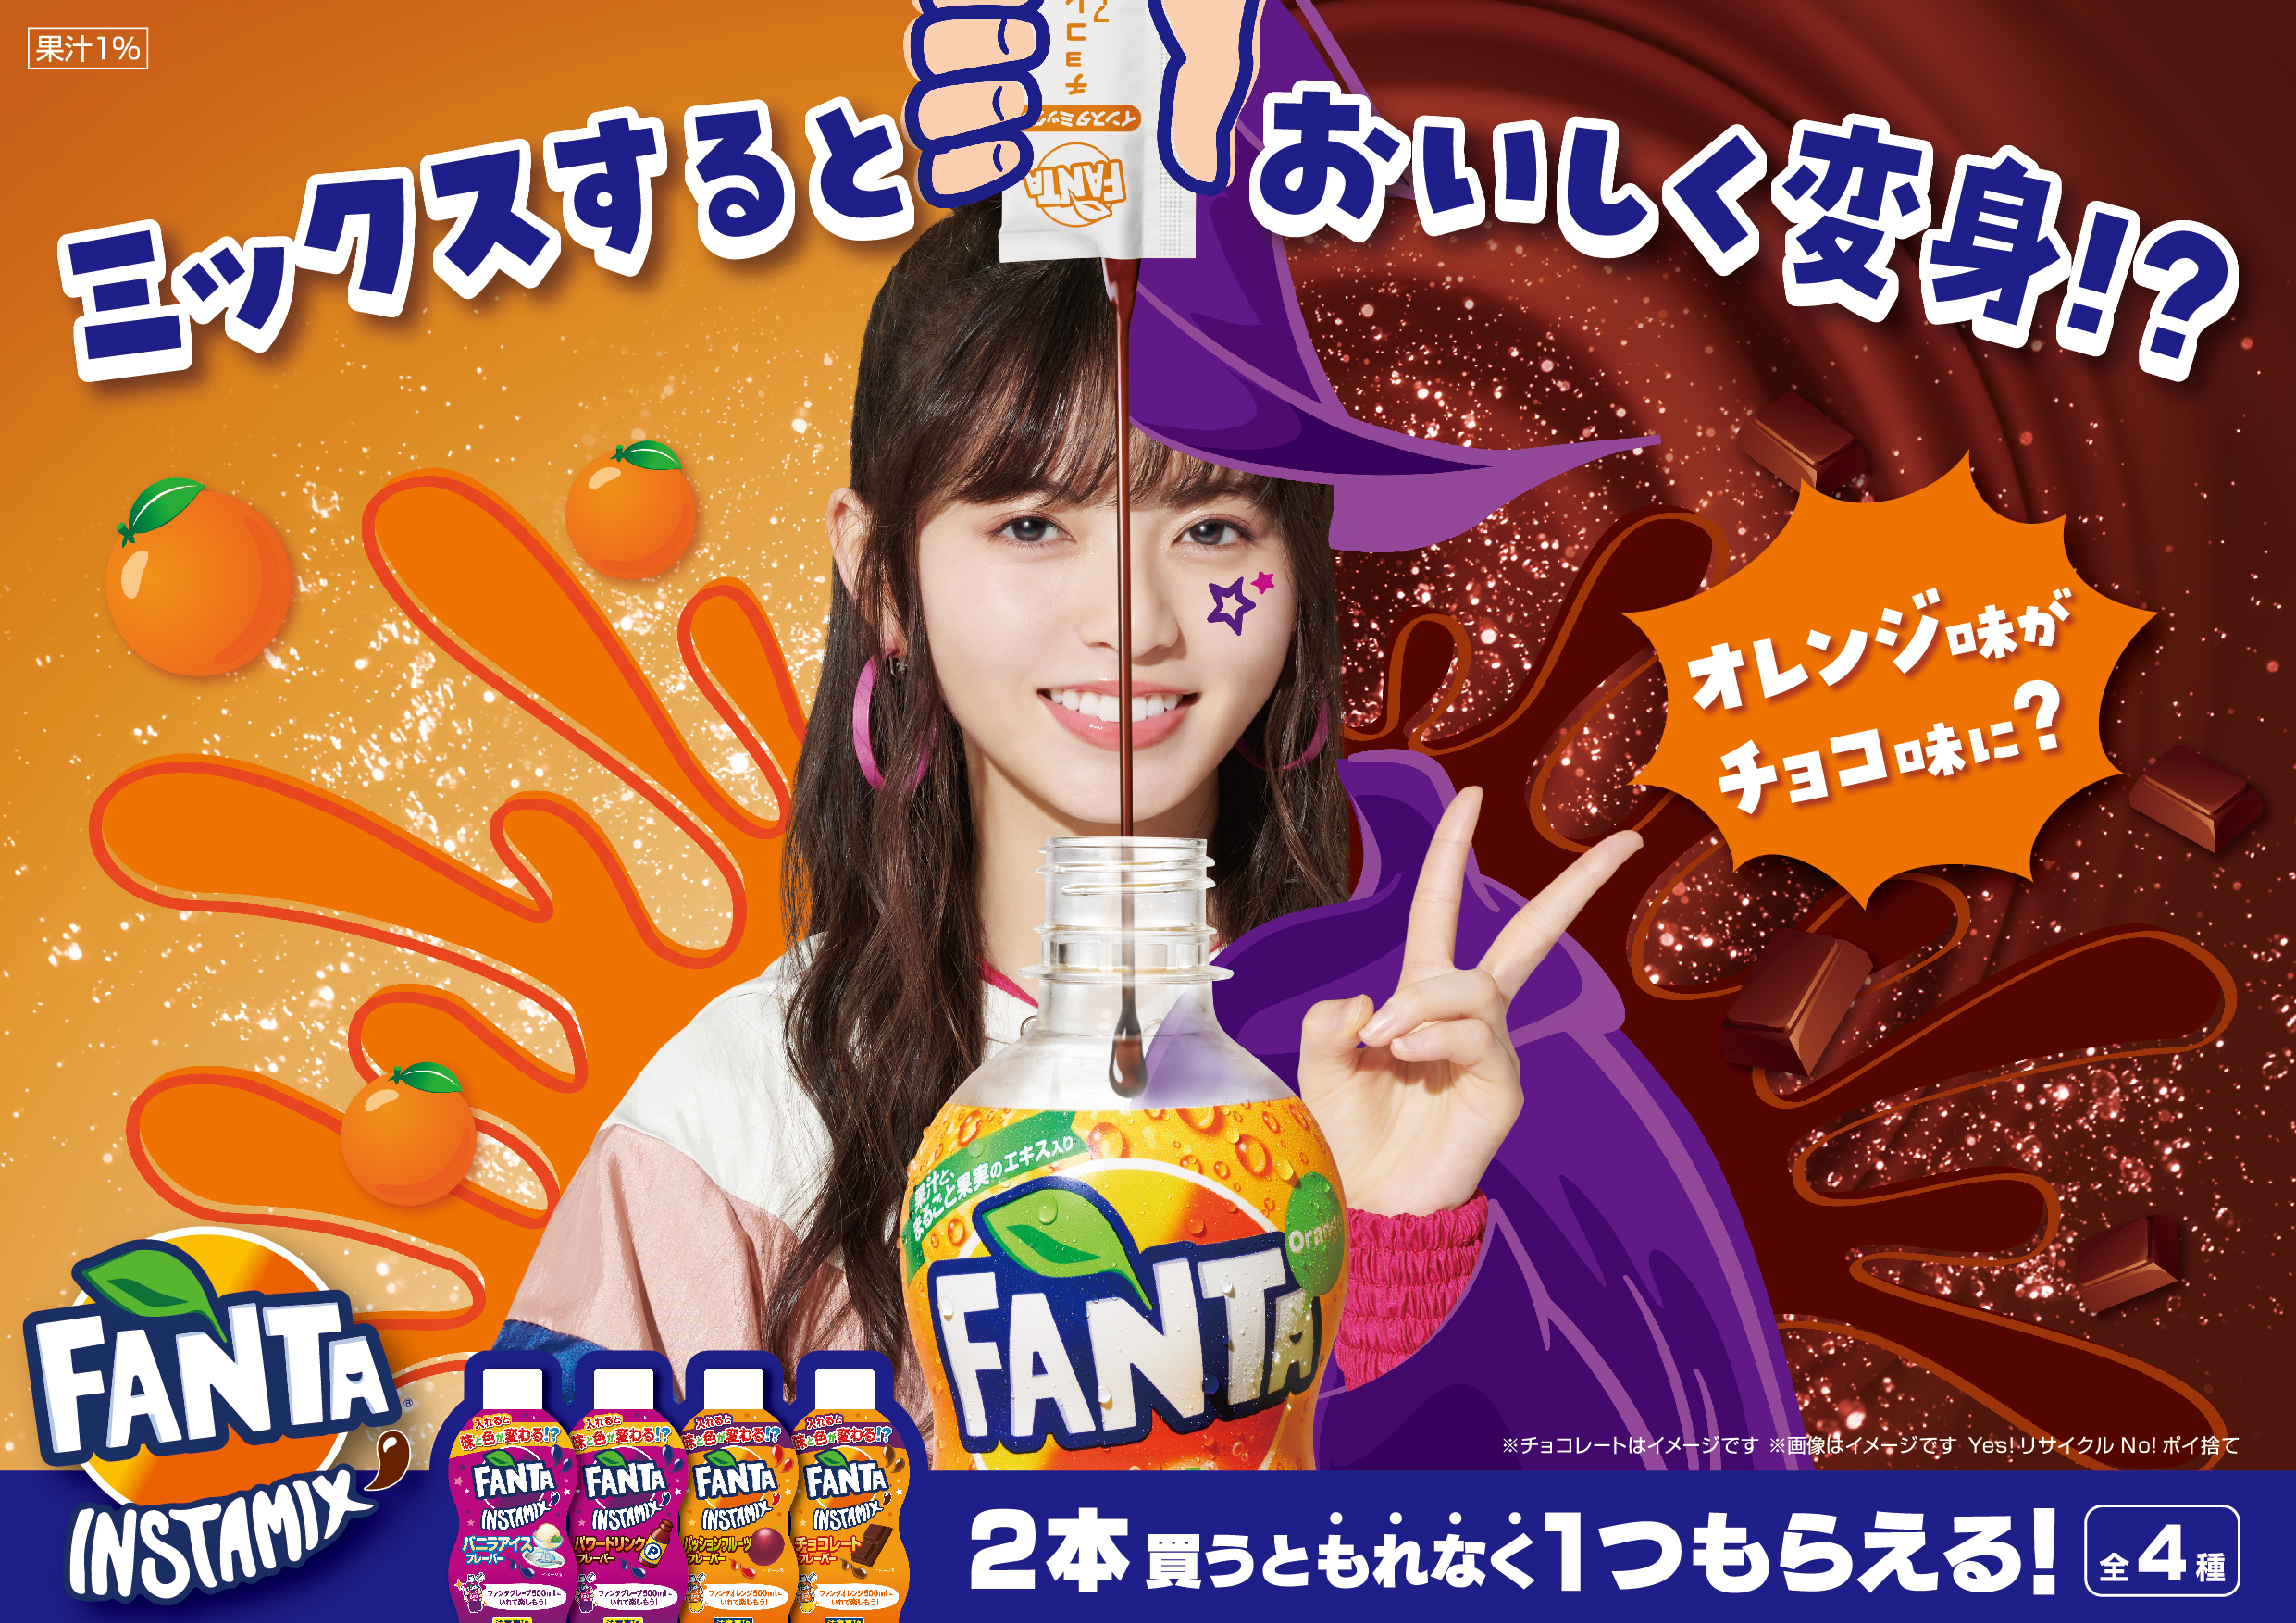 いつもの ファンタ グレープ ファンタ オレンジ がまさかの味と色に ファンタ インスタミックス 9月14日 月 から期間限定でキャンペーン開始 プレスリリース コラム ニューズウィーク日本版 オフィシャルサイト